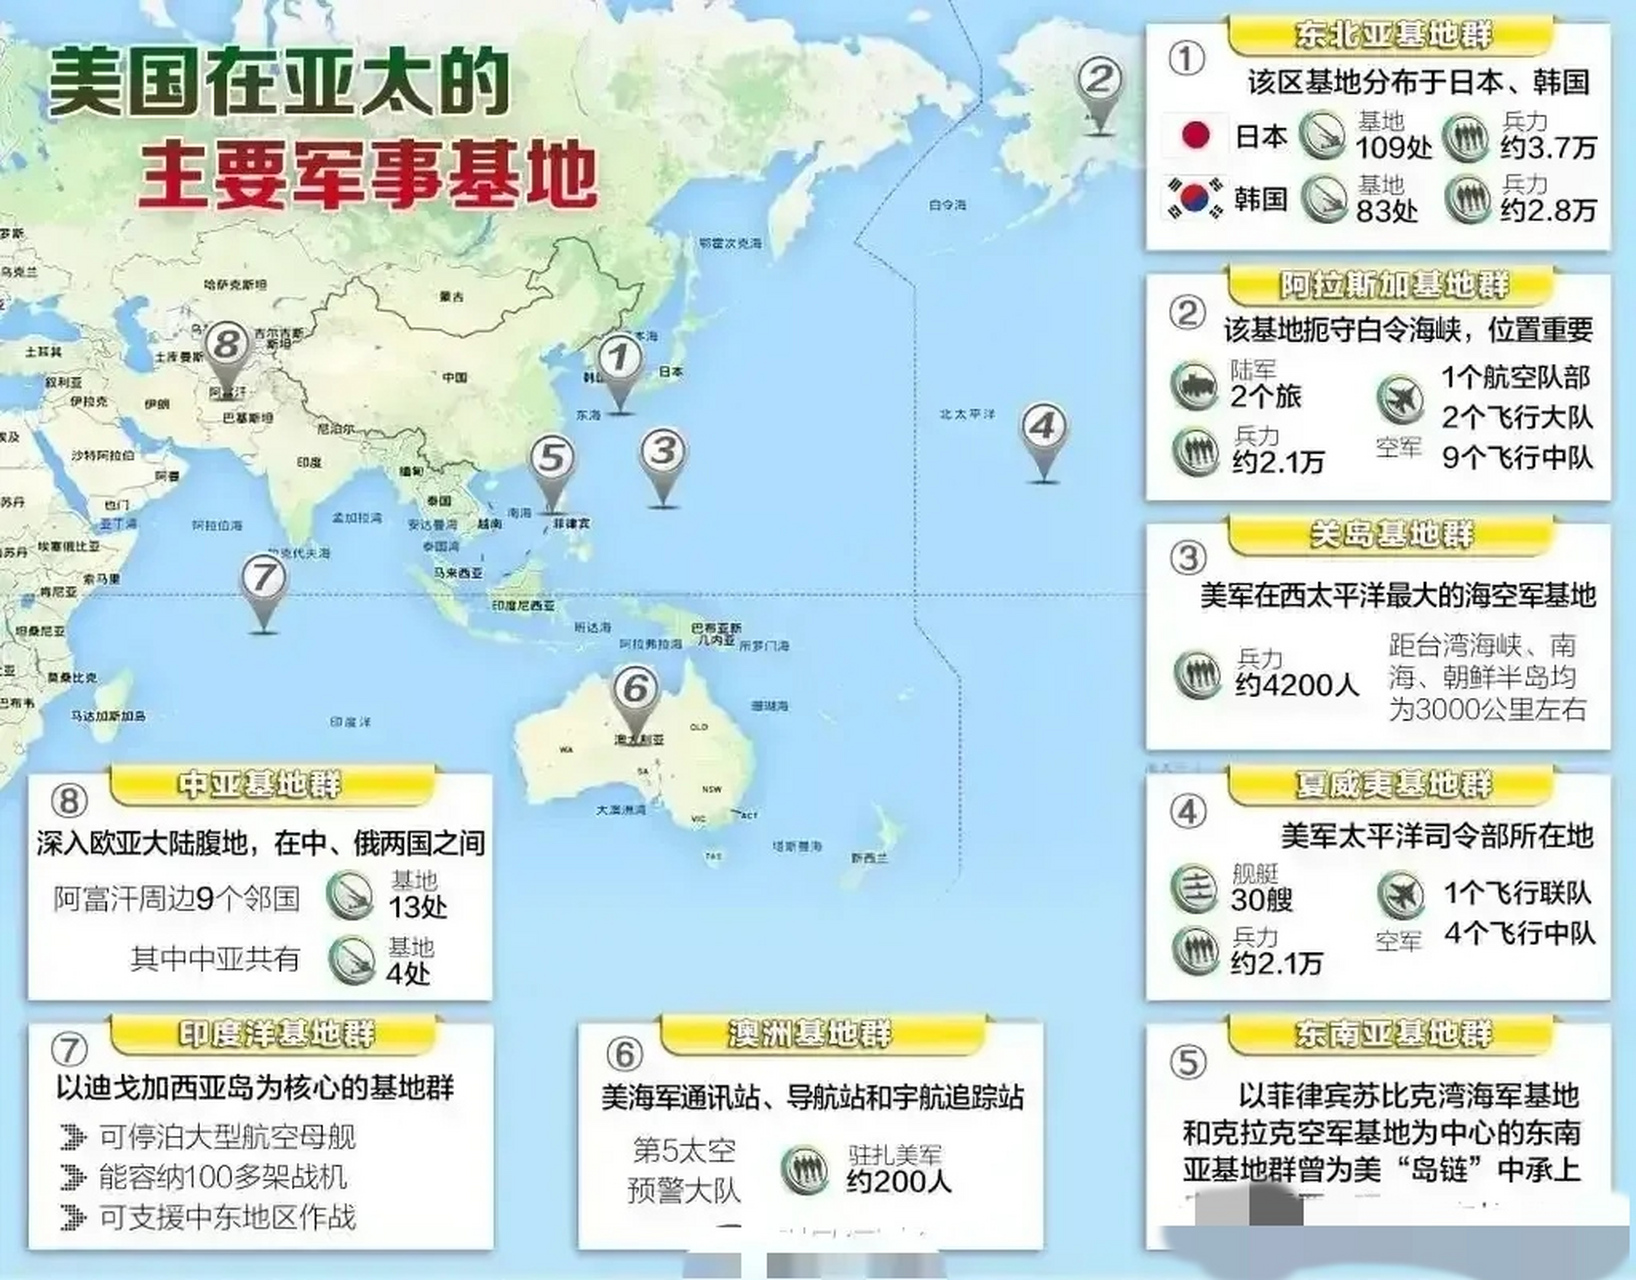 中国周边美军基地分布图片